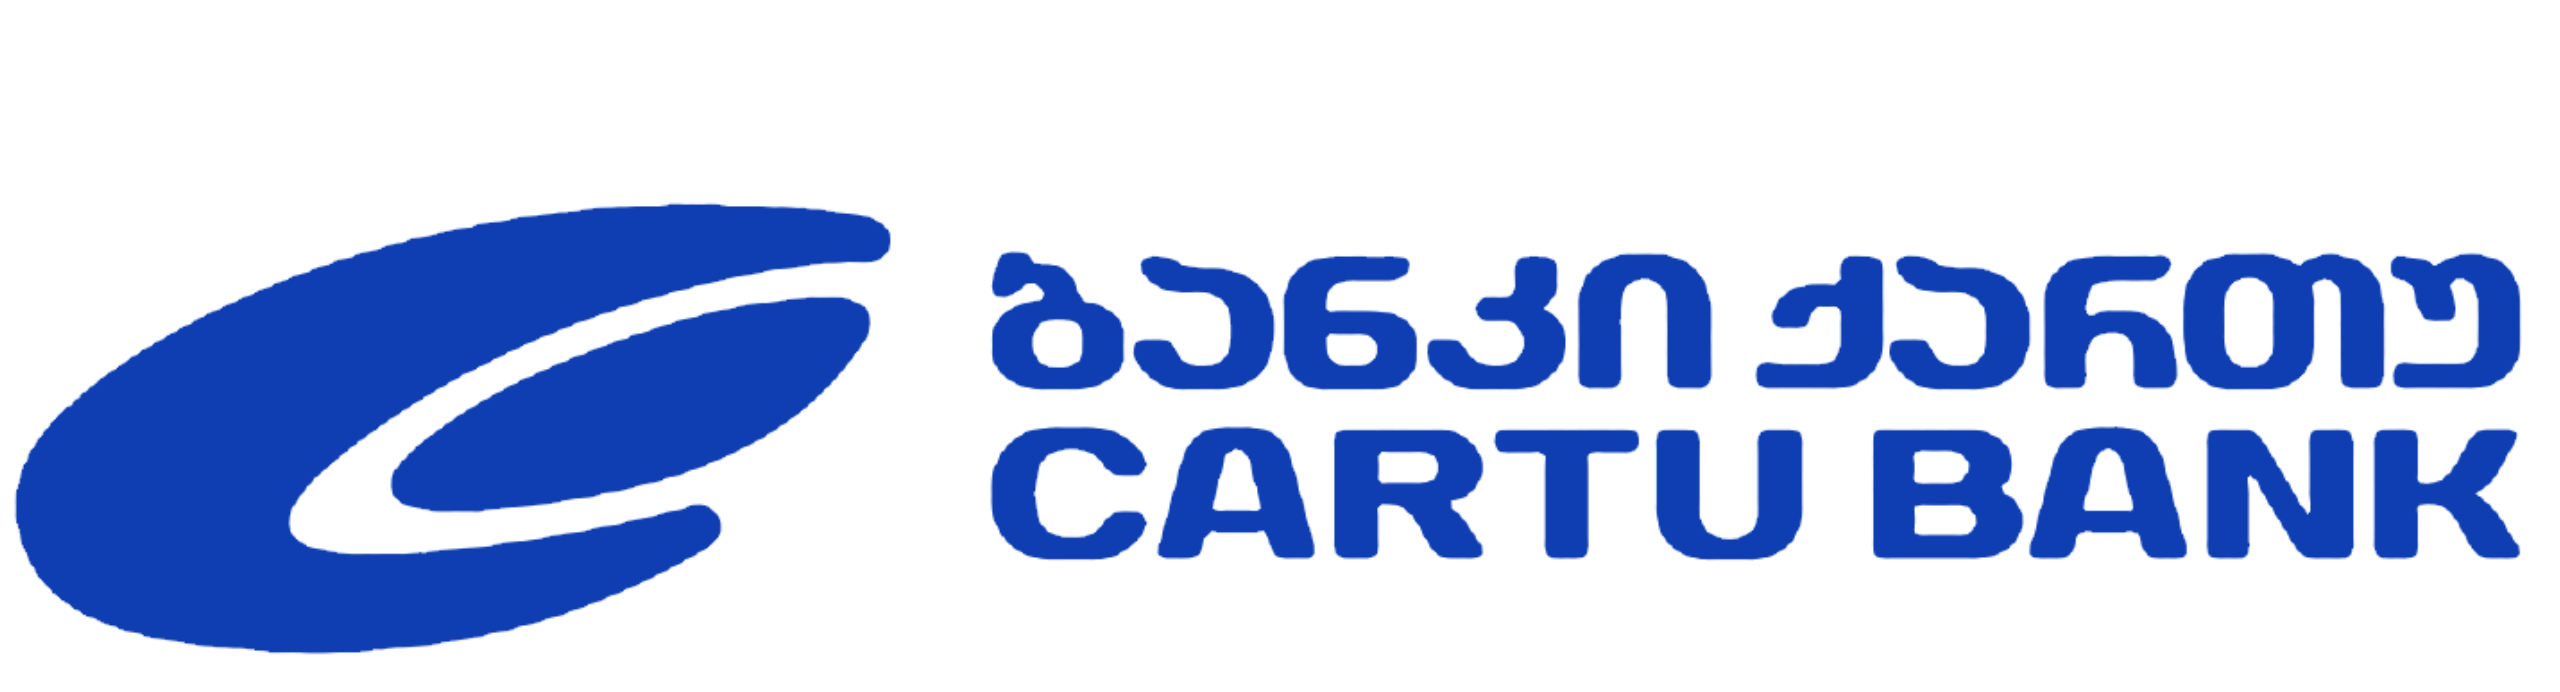 Cartu-bank logo